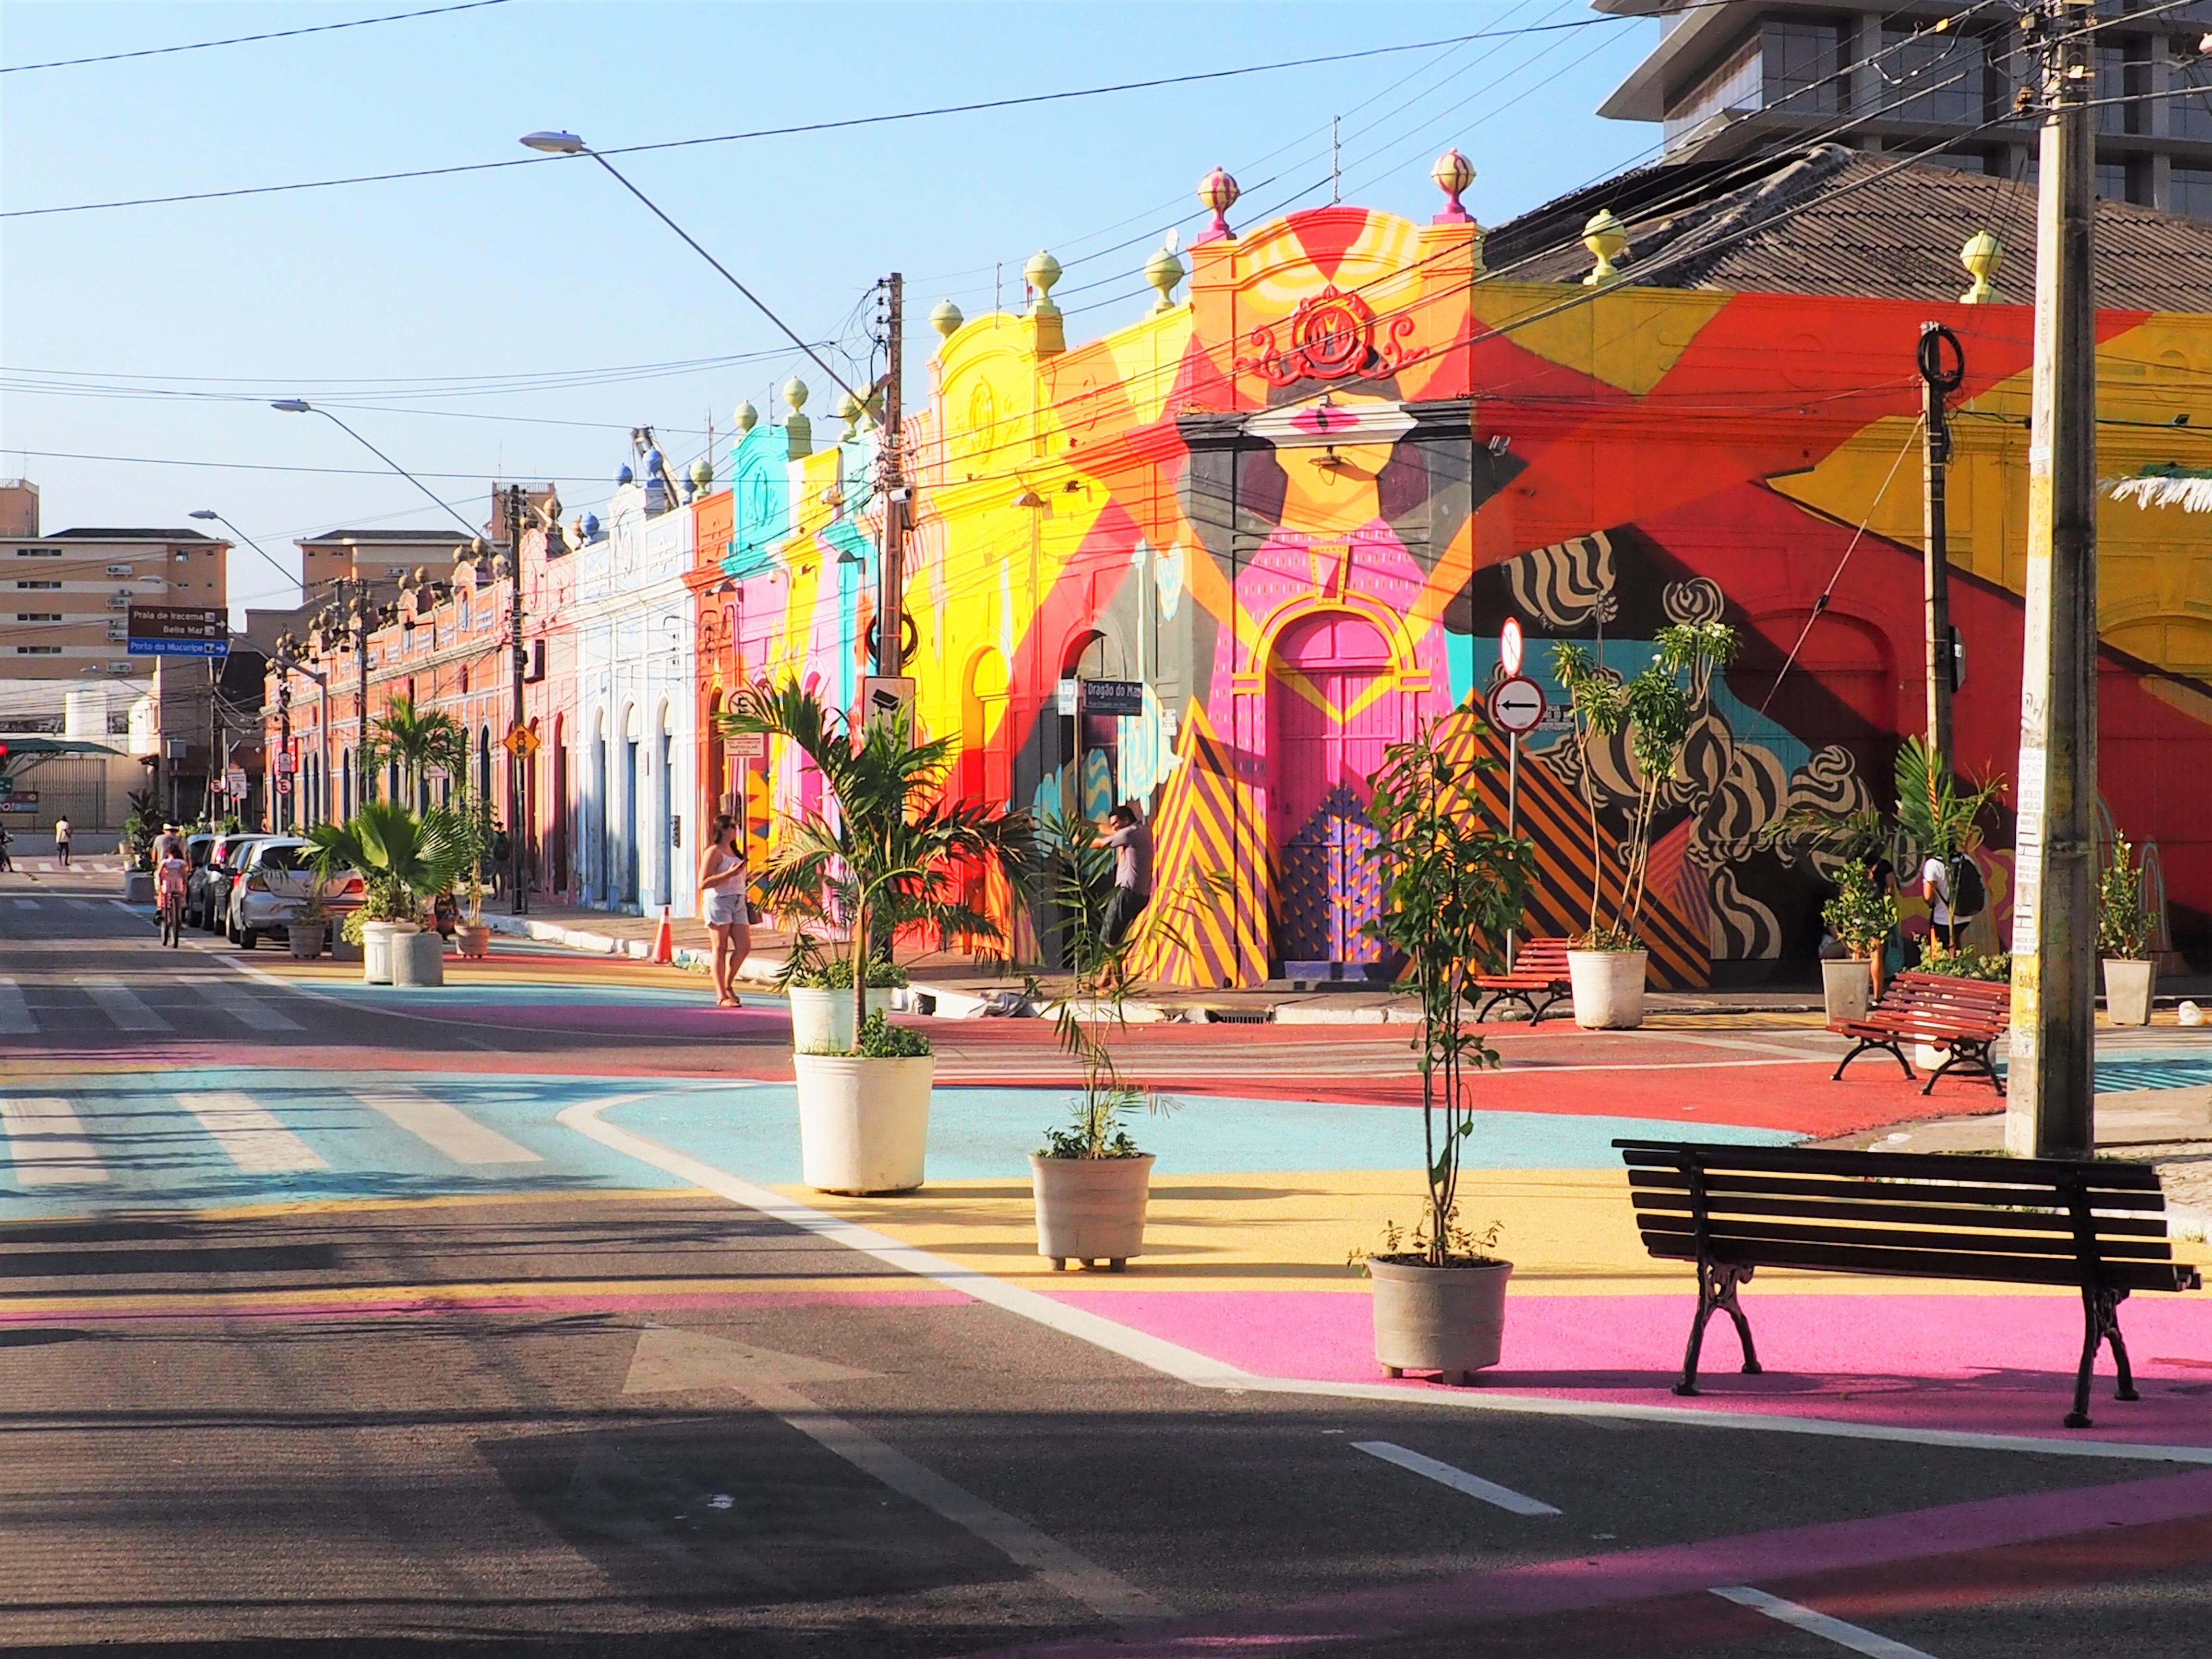 Colorful street in Fortaleza, Brazil